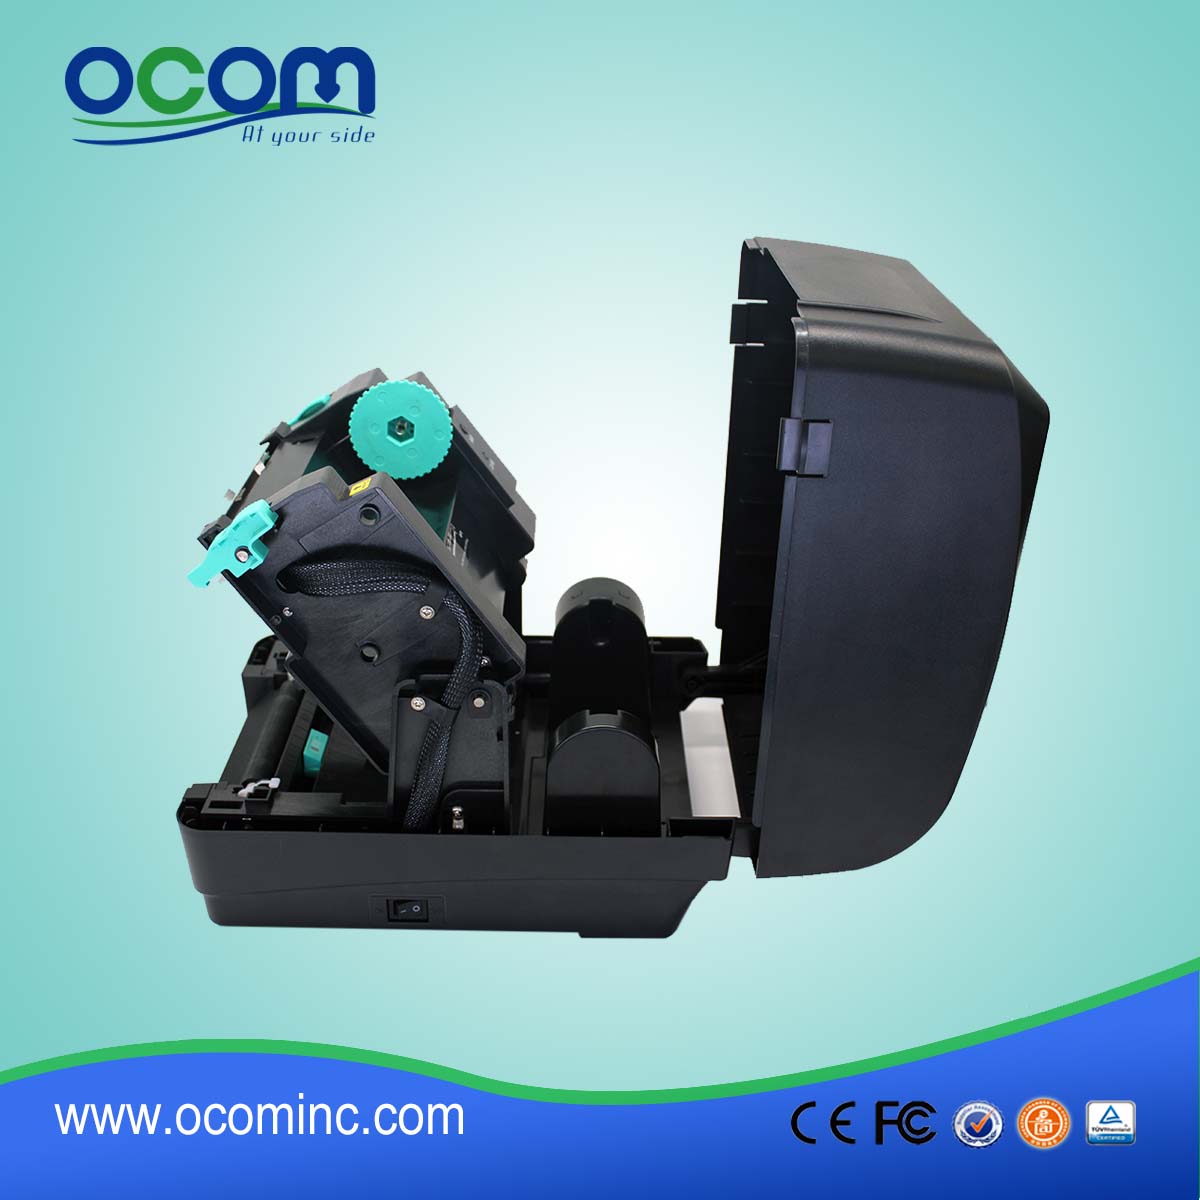 OCBP-004--2016 OCOM جديدة كود الطابعات تصميم ذات جودة عالية، والطابعات كود